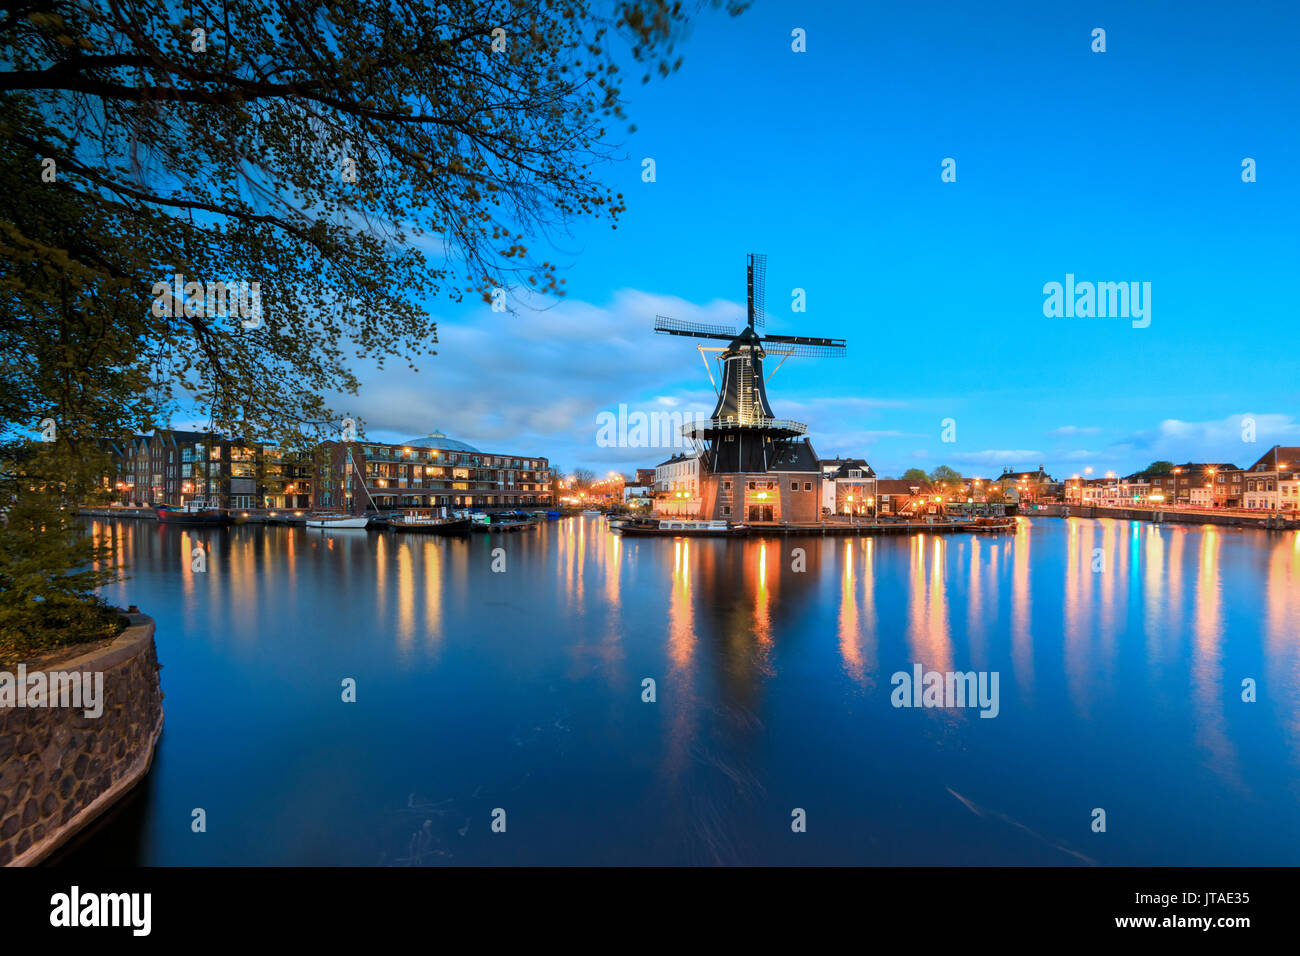 Dämmerung leuchten auf der Mühle De Adriaan, spiegelt sich in den Fluss Spaarne, Haarlem, Nord Holland, Niederlande, Europa Stockfoto